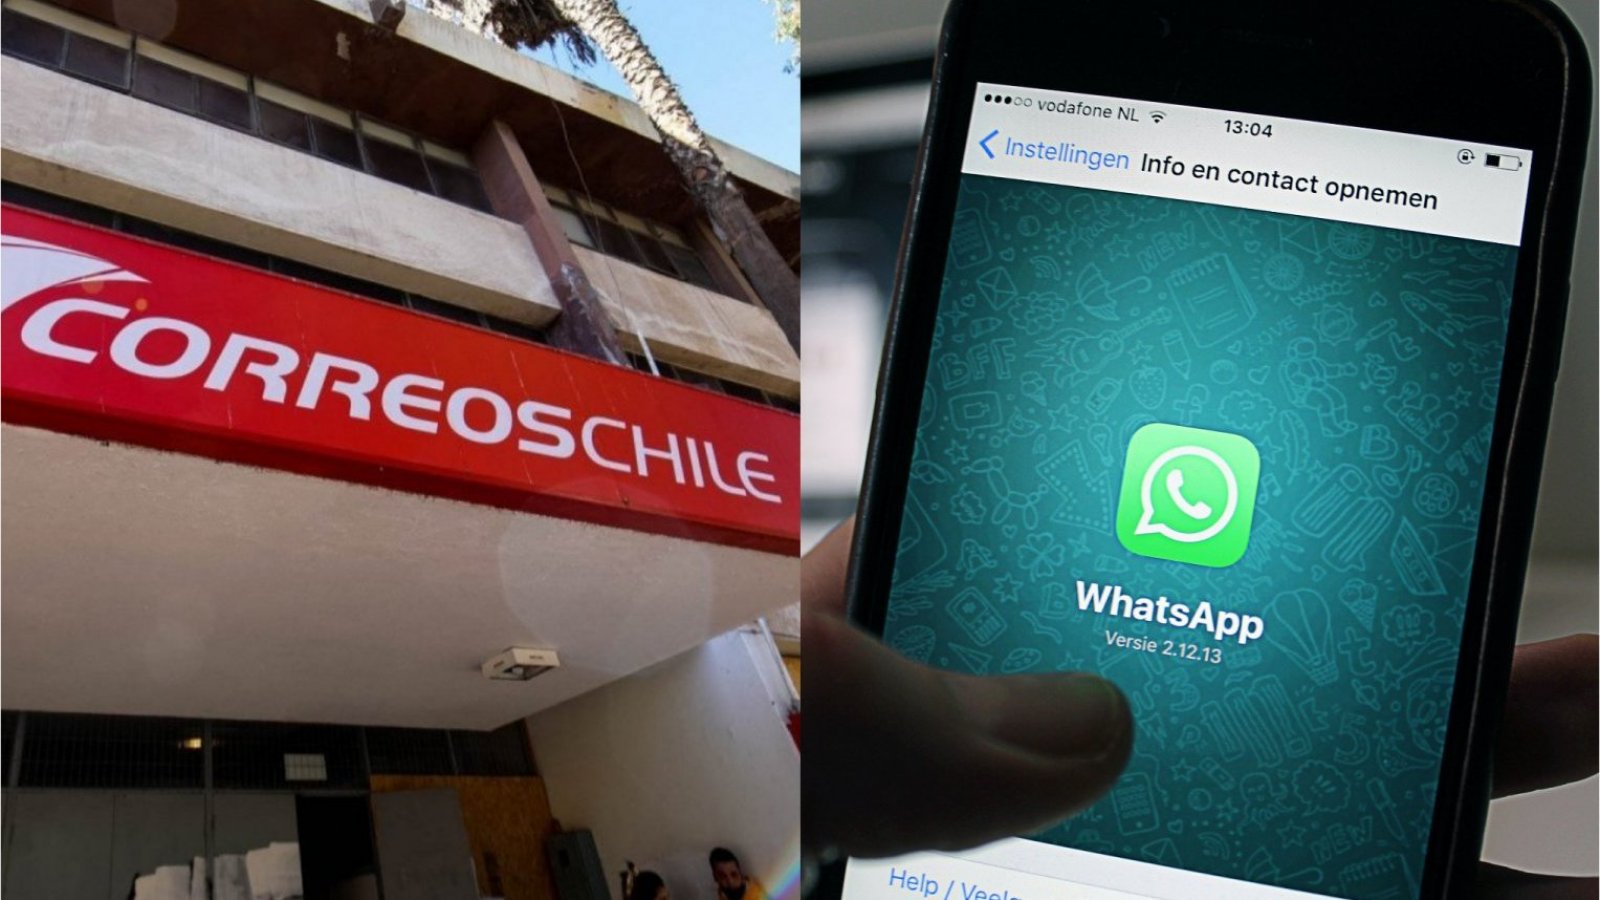 Correos de Chile. Whatsapp.